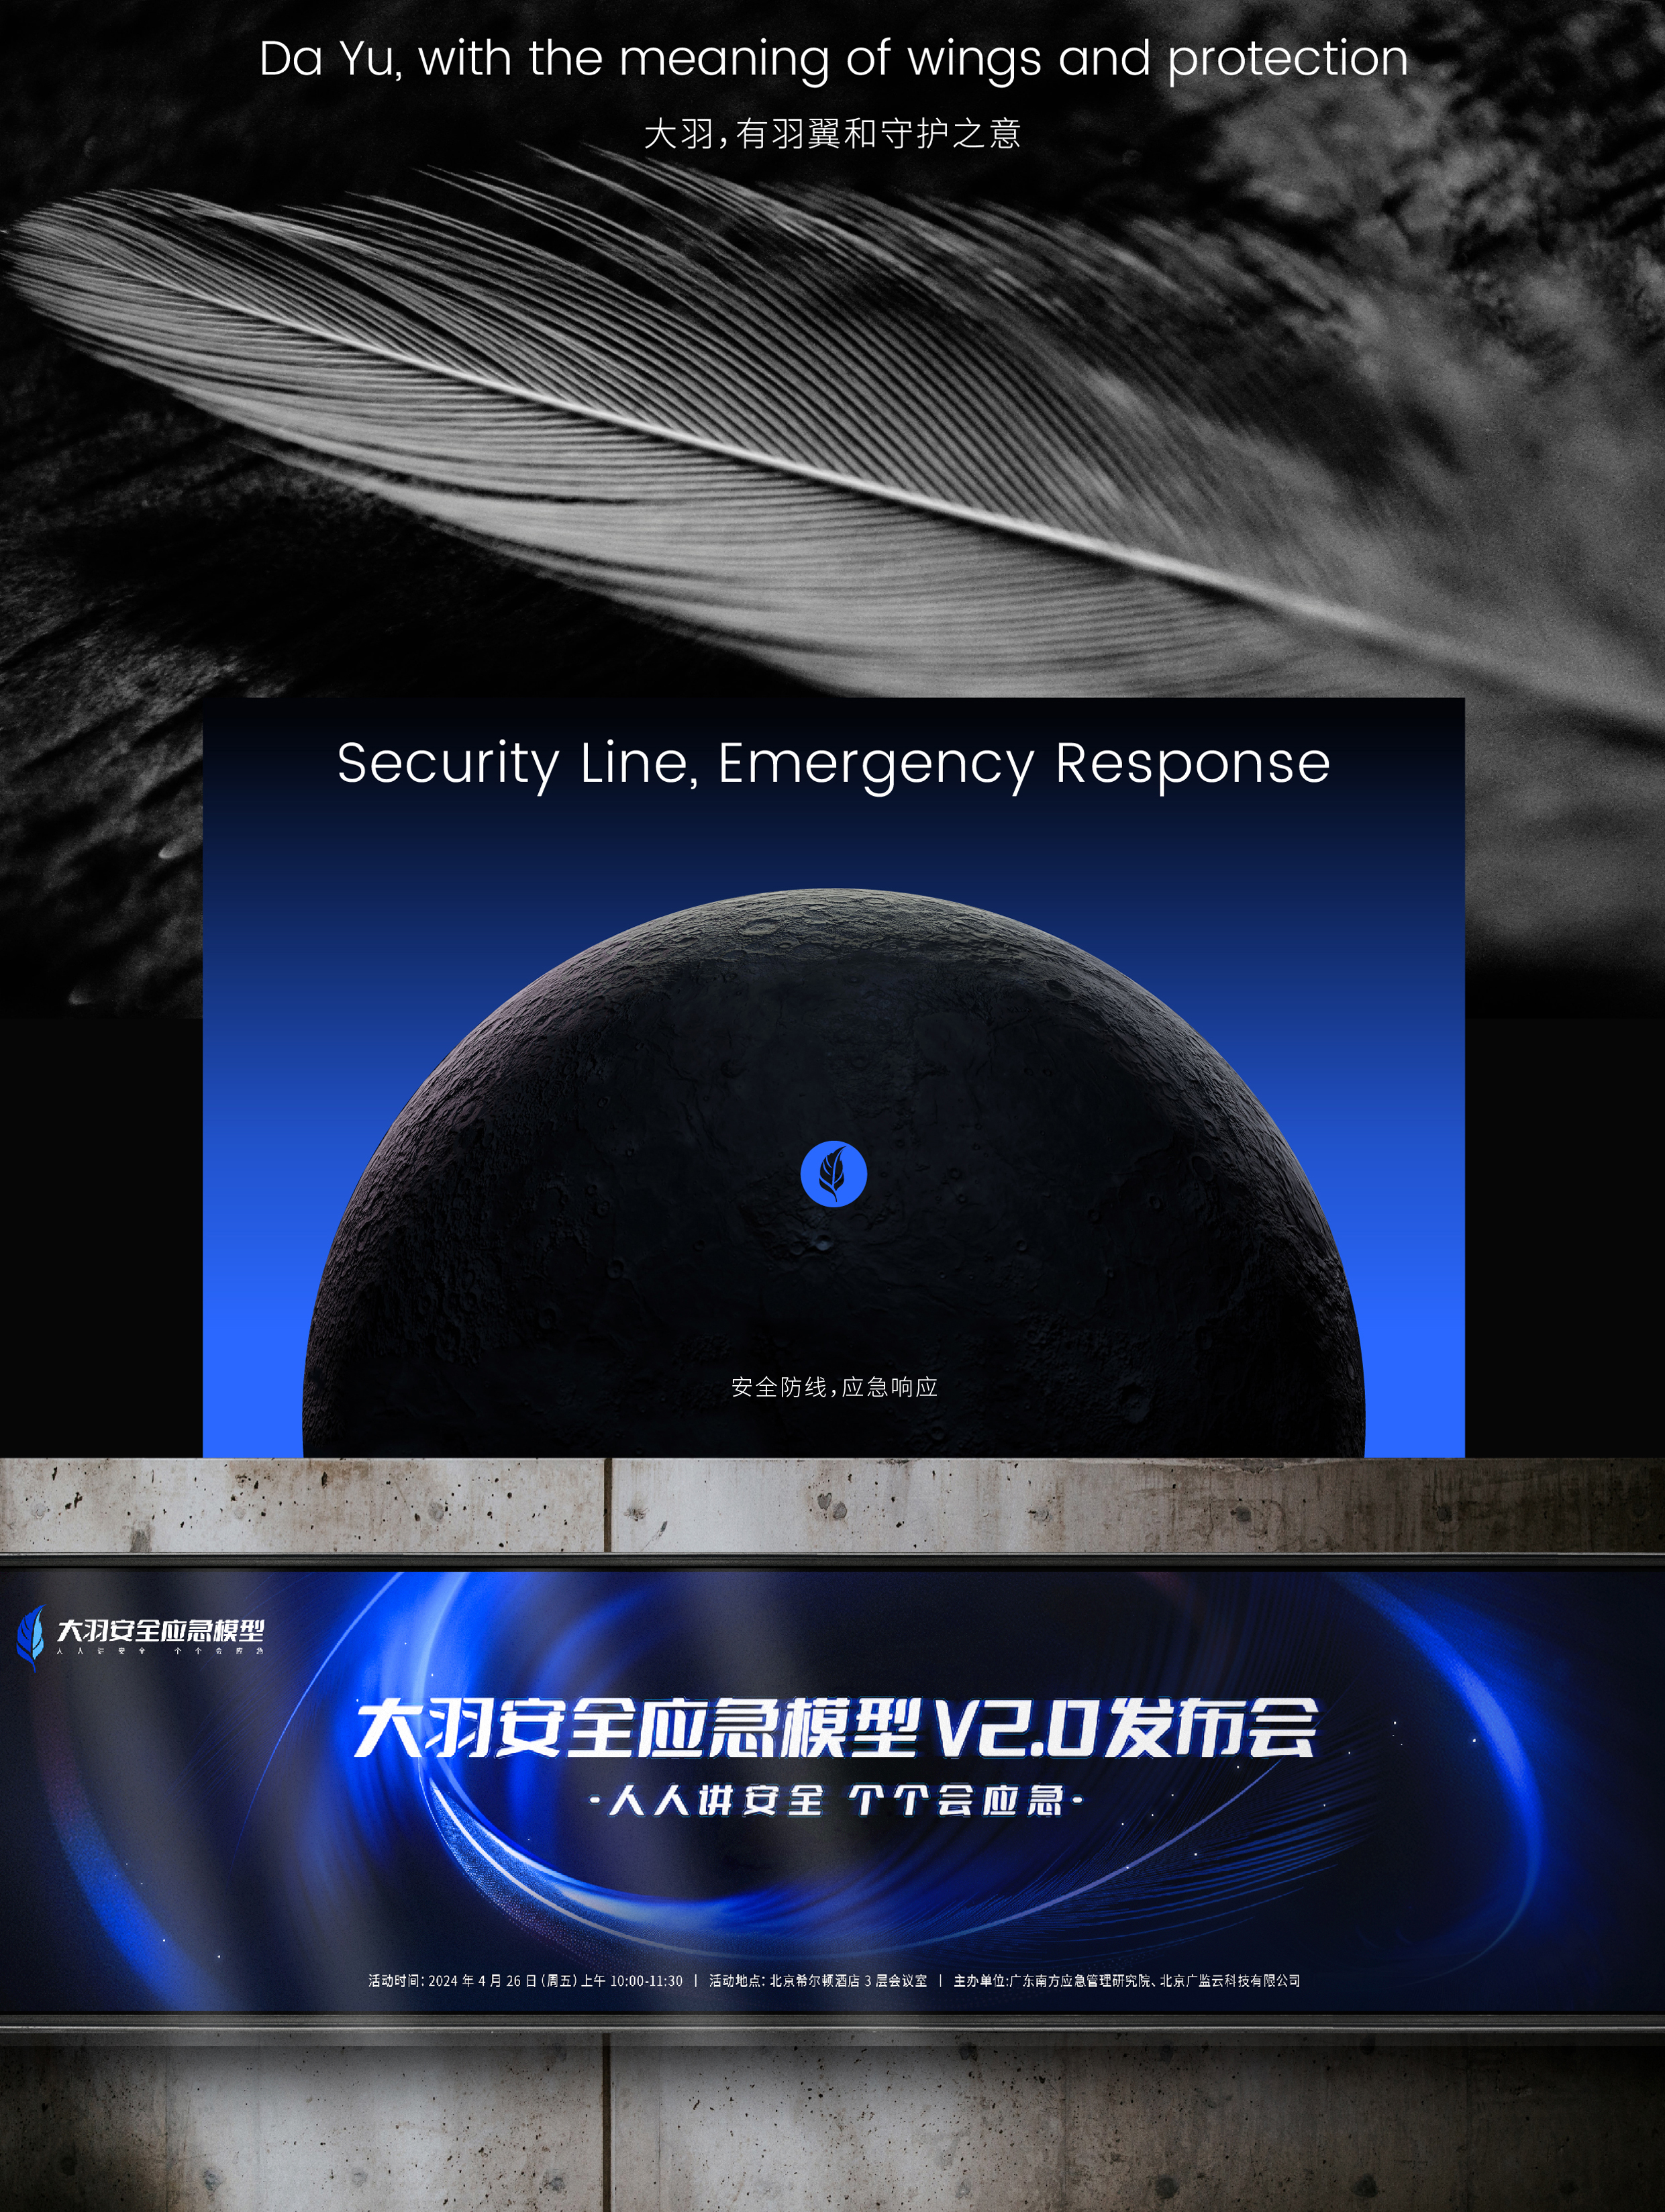 大羽安全应急模型V2.0品牌发布会视觉设计